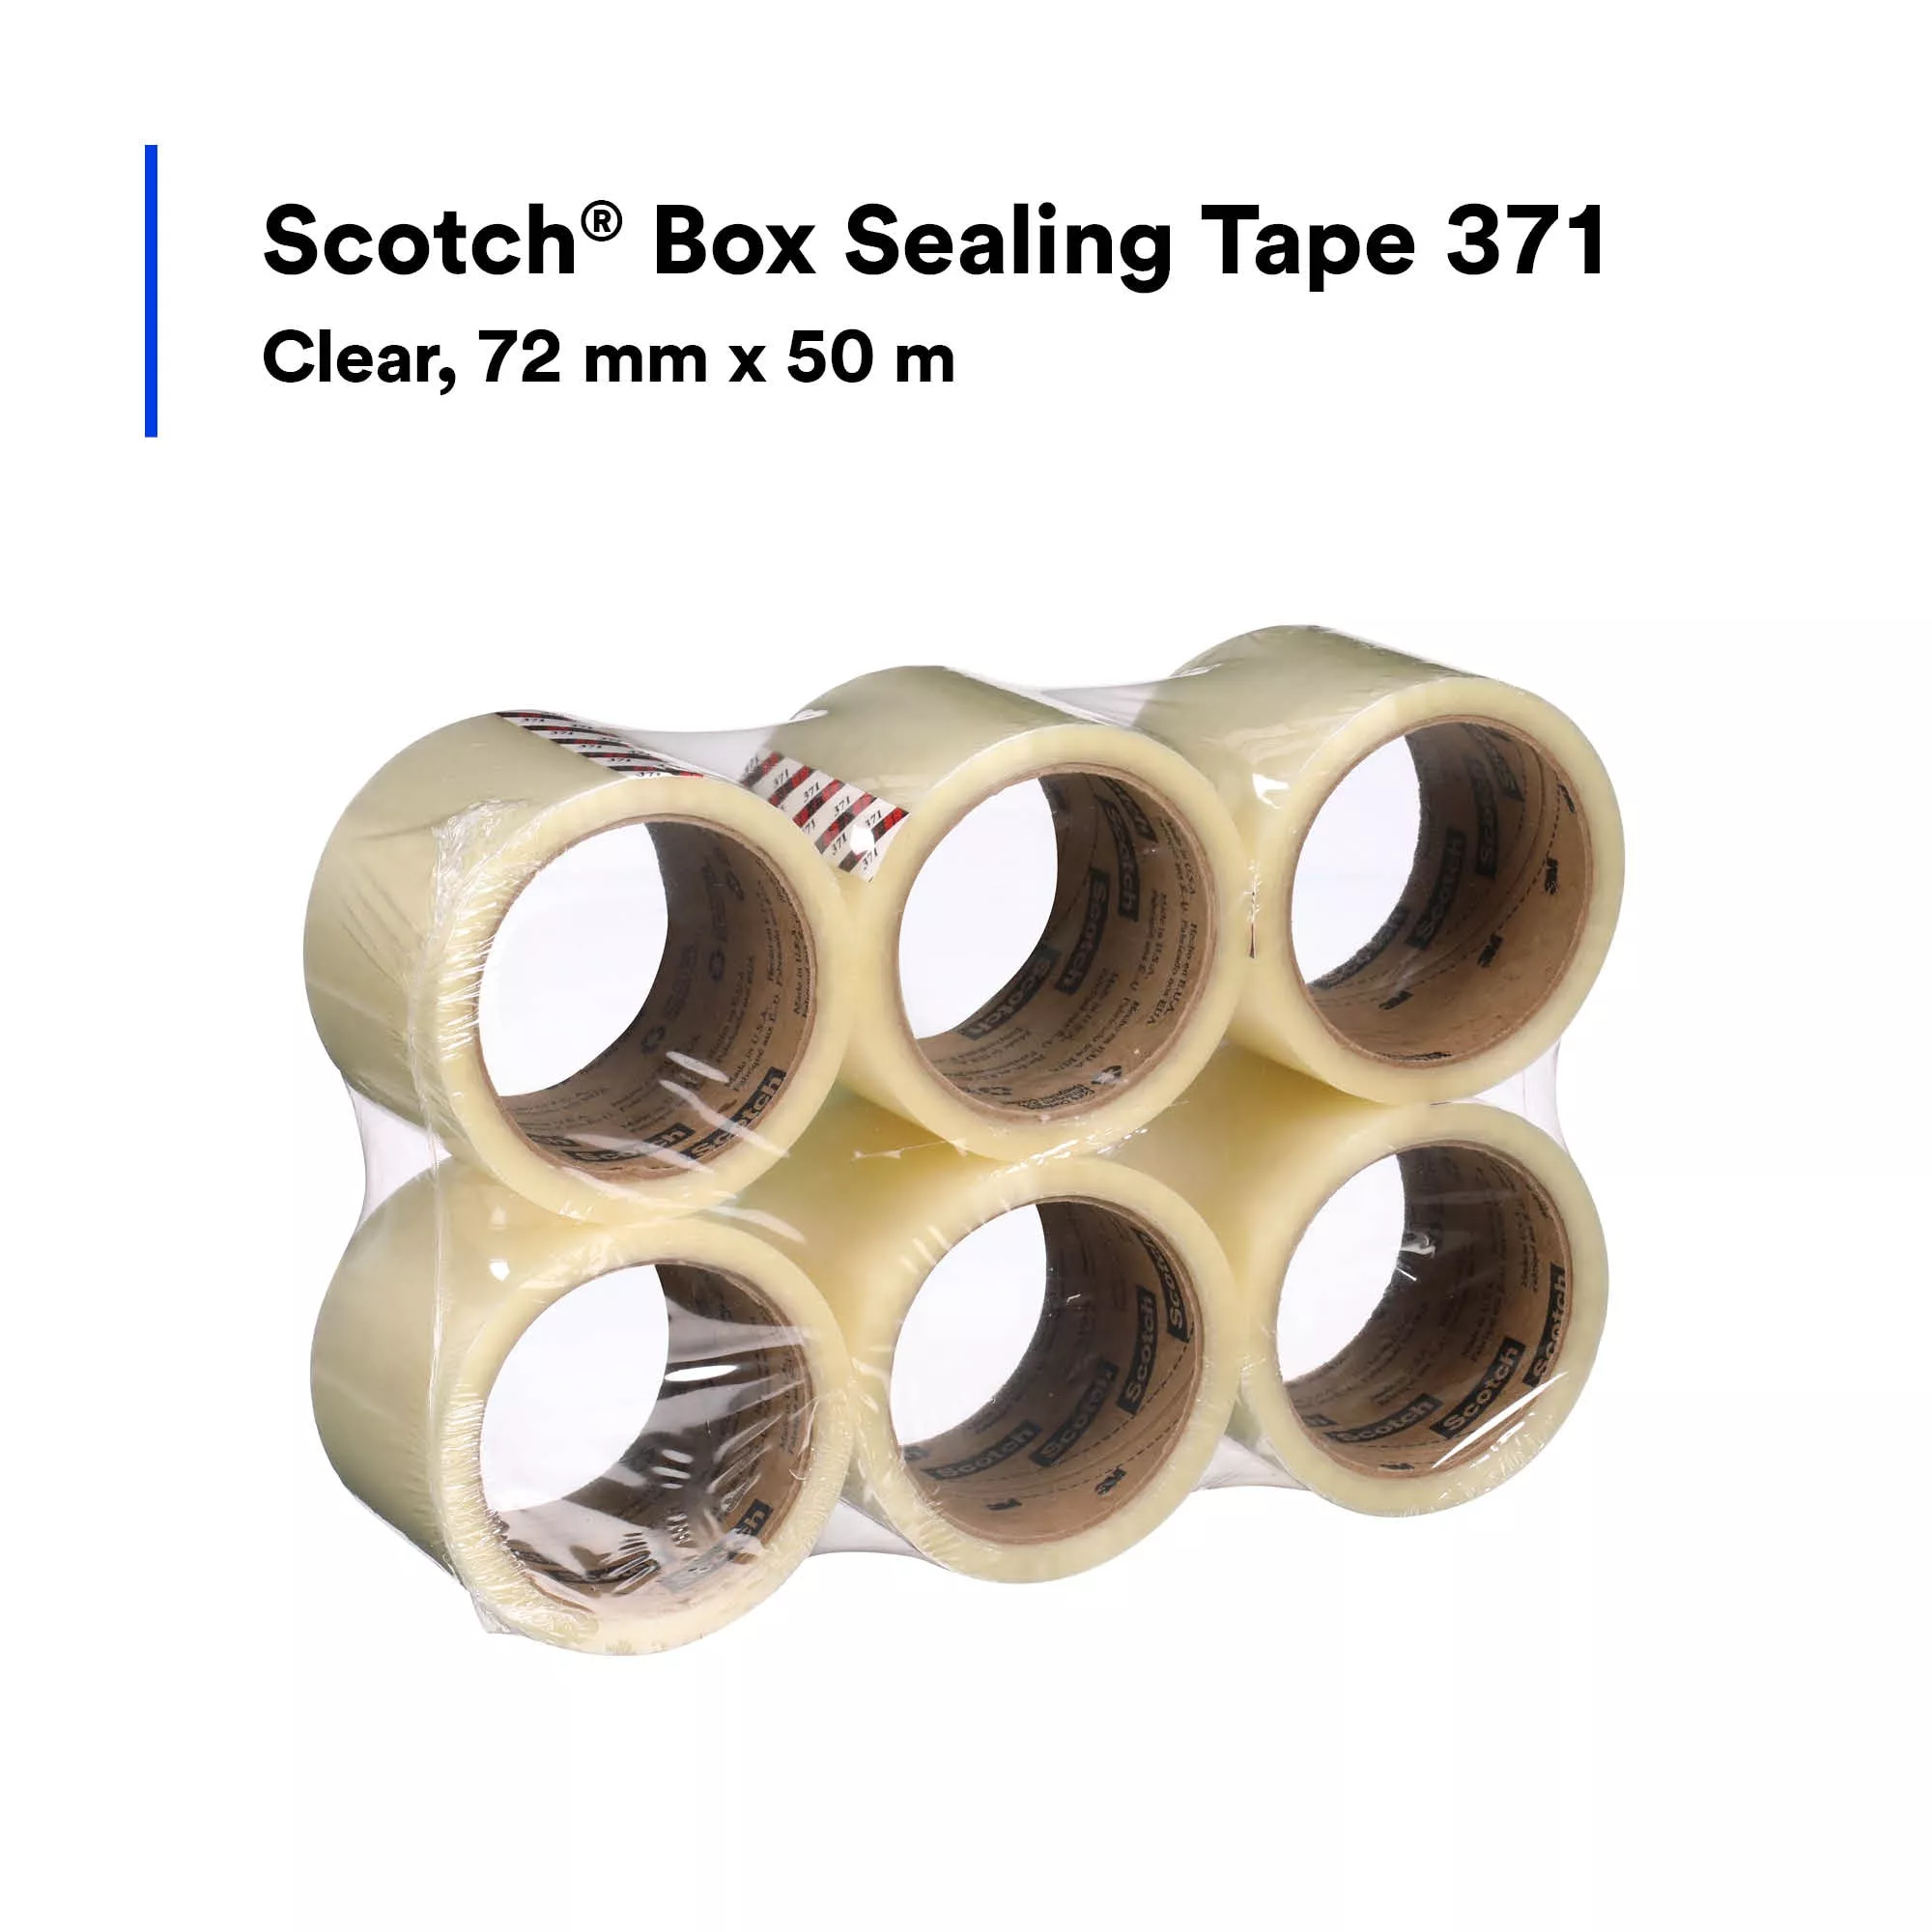 SKU 7010374972 | Scotch® Box Sealing Tape 371